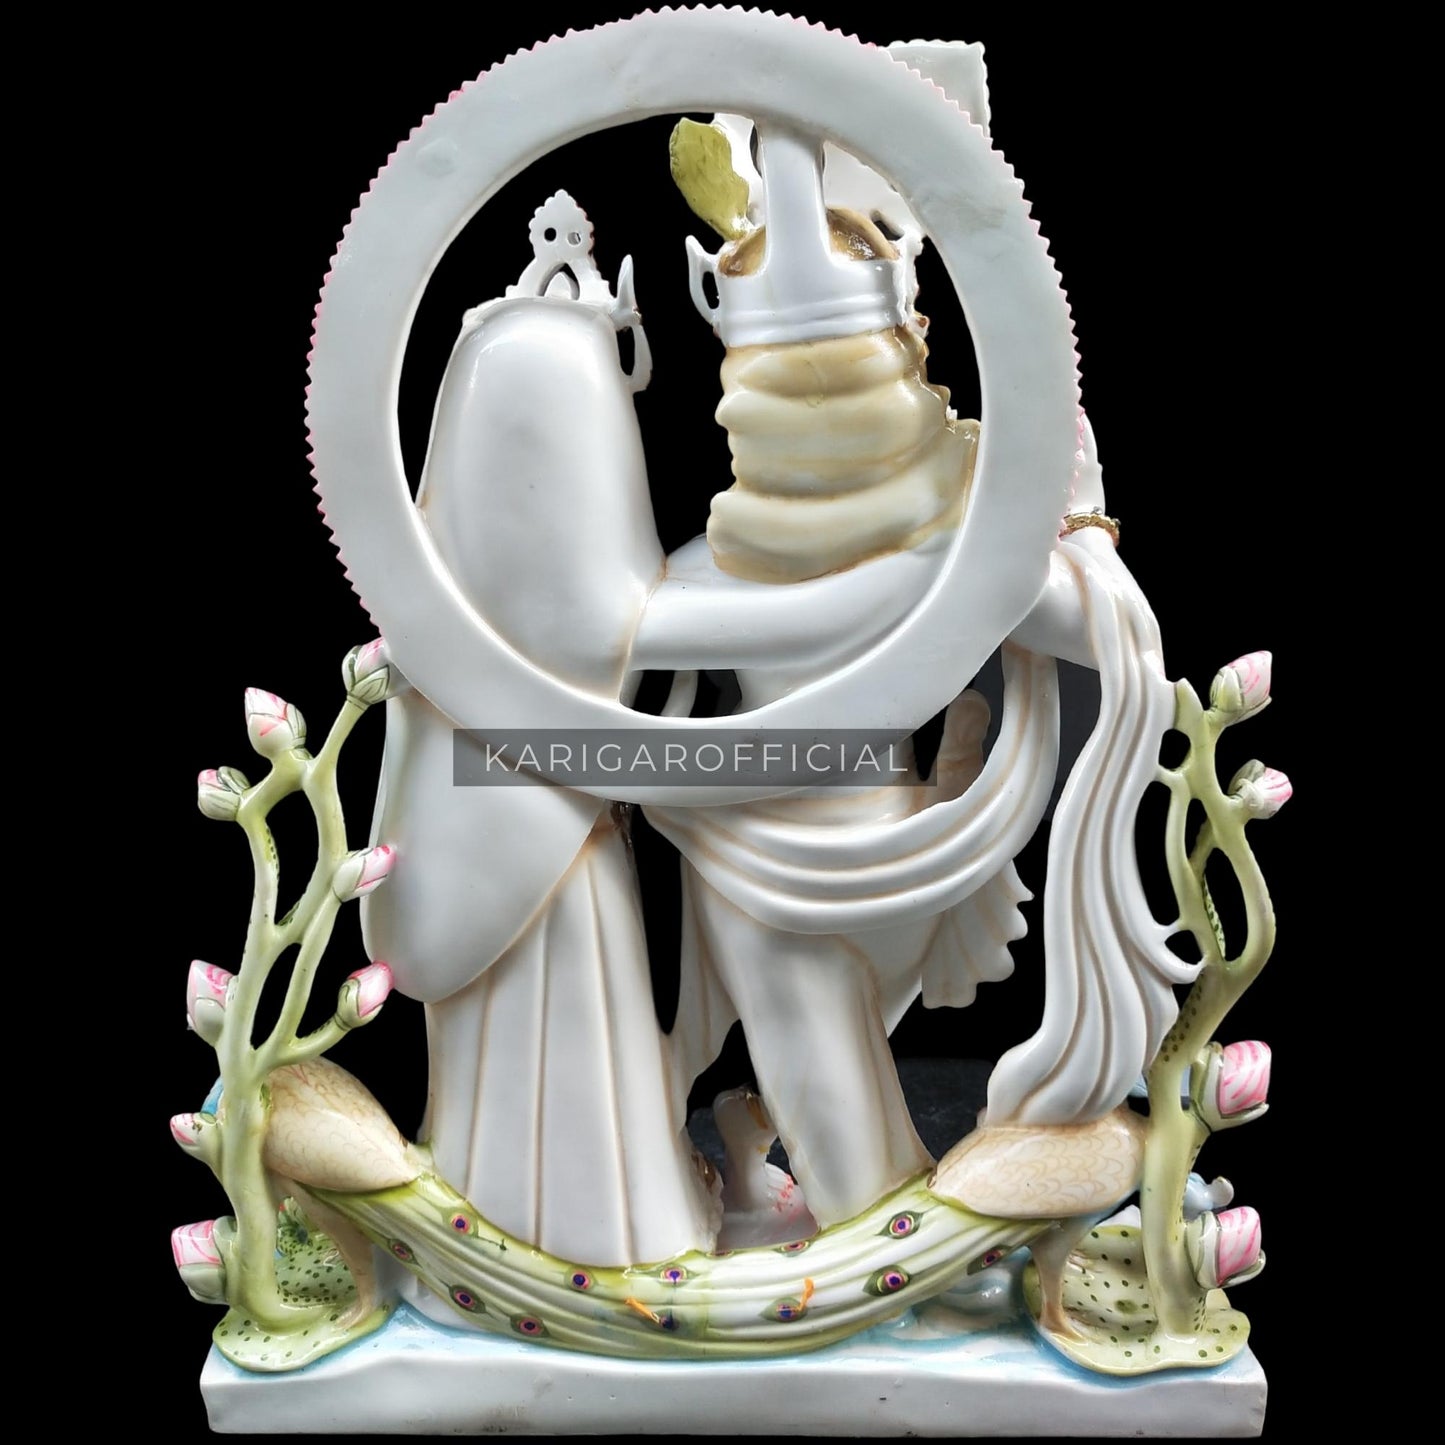 Estatua de Radha Krishna Jugal Jodi Murti grande 30 pulgadas mármol Radha Krishna estatuilla joyería tachonada colorida divina pareja ídolo pintado a mano especial boda inauguración aniversario regalos escultura